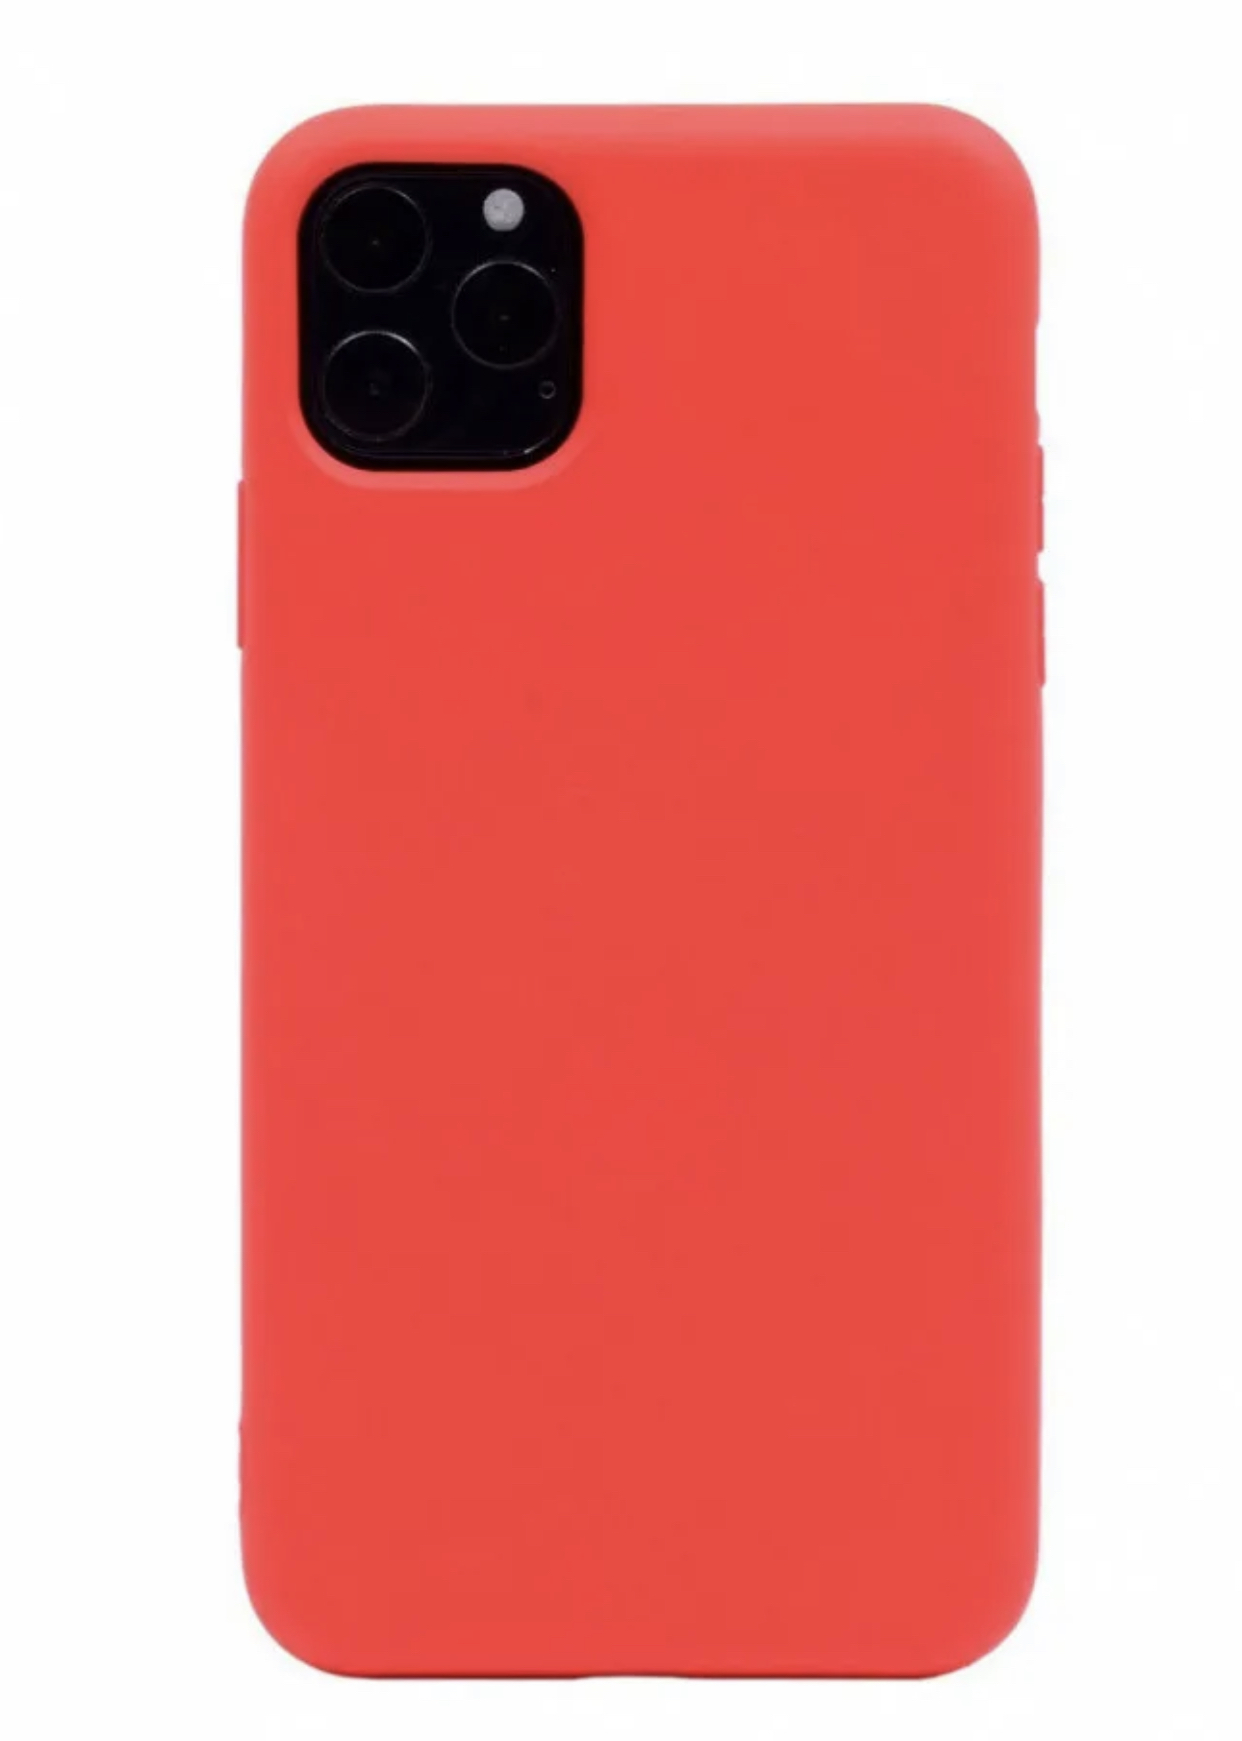 Красный чехол для телефона. Iphone 11 Pro Max красный. Чехол iphone 11 Pro Silicone Case - Red красный. Iphone 11 Pro Max Silicone Case красный. Iphone 11 Pro красный.